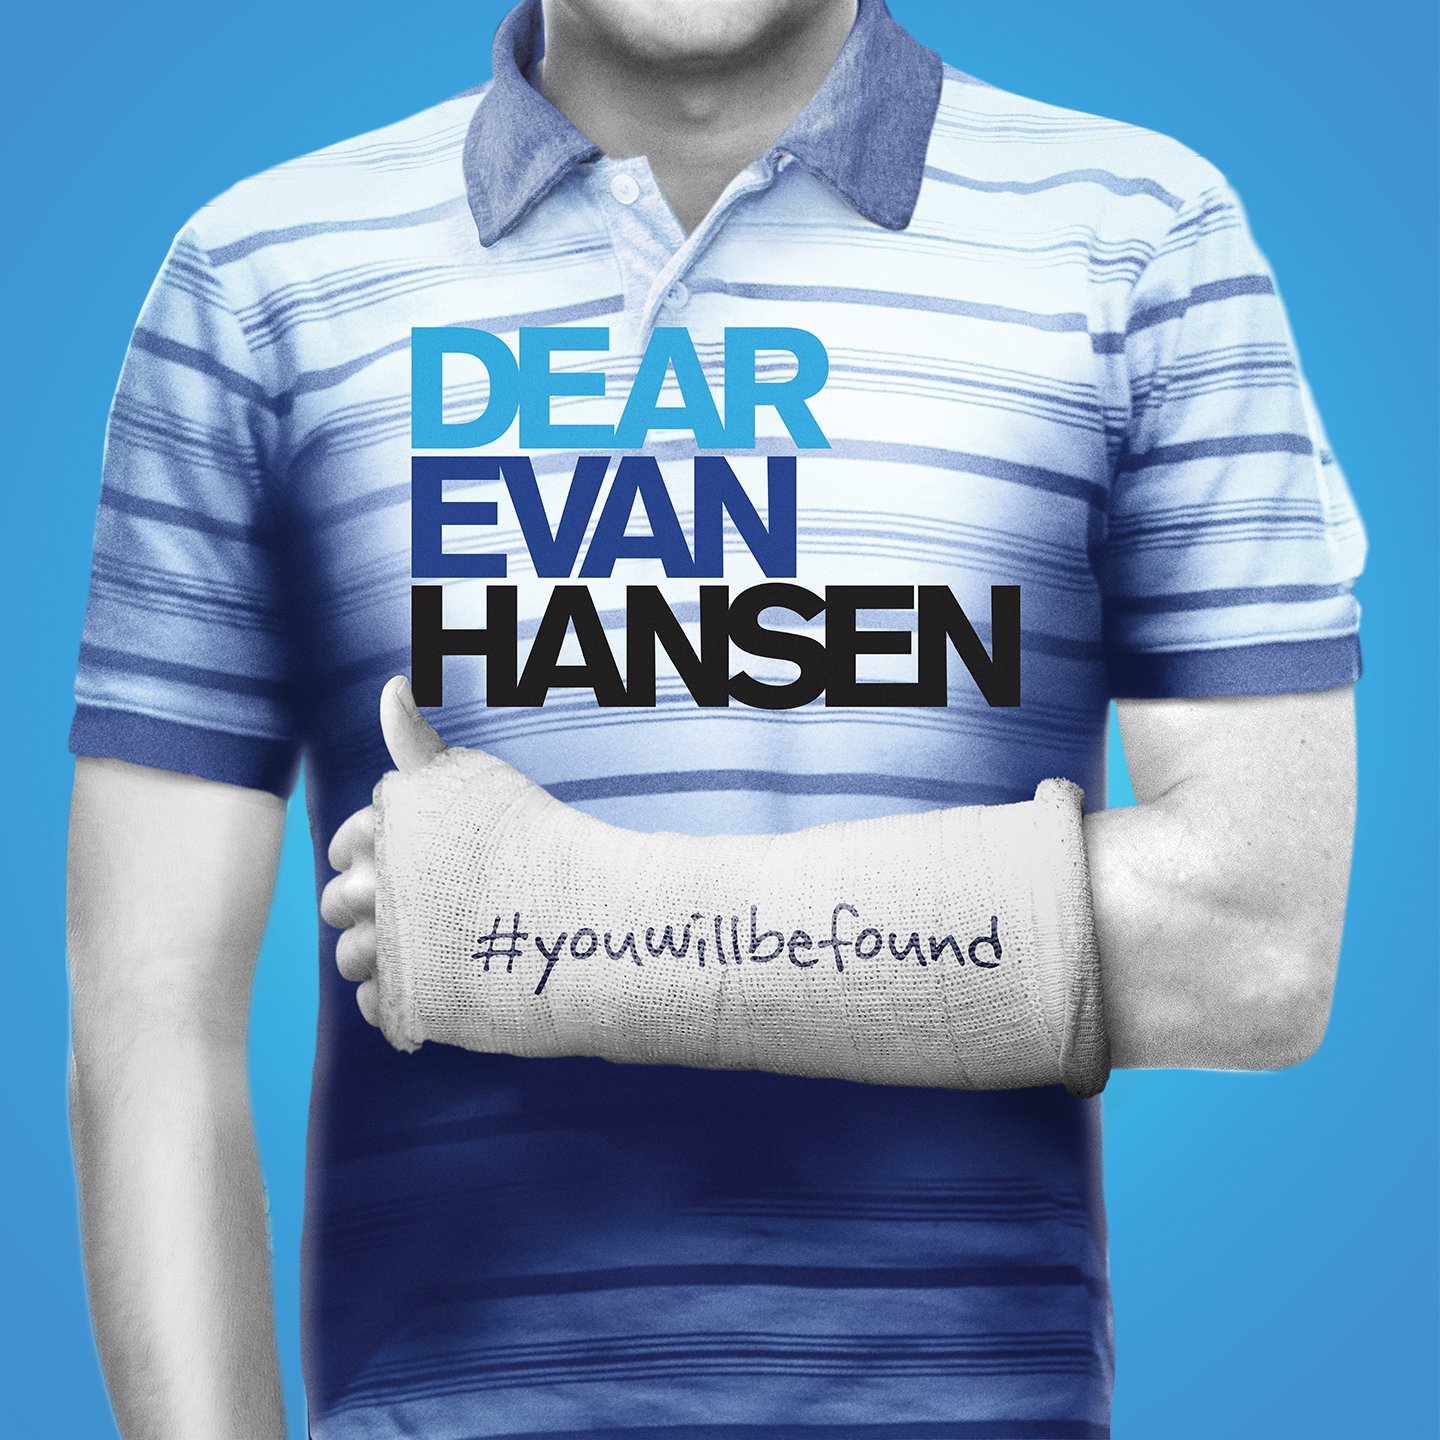 Dear Evan Hansen at The Ahmanson Theatre